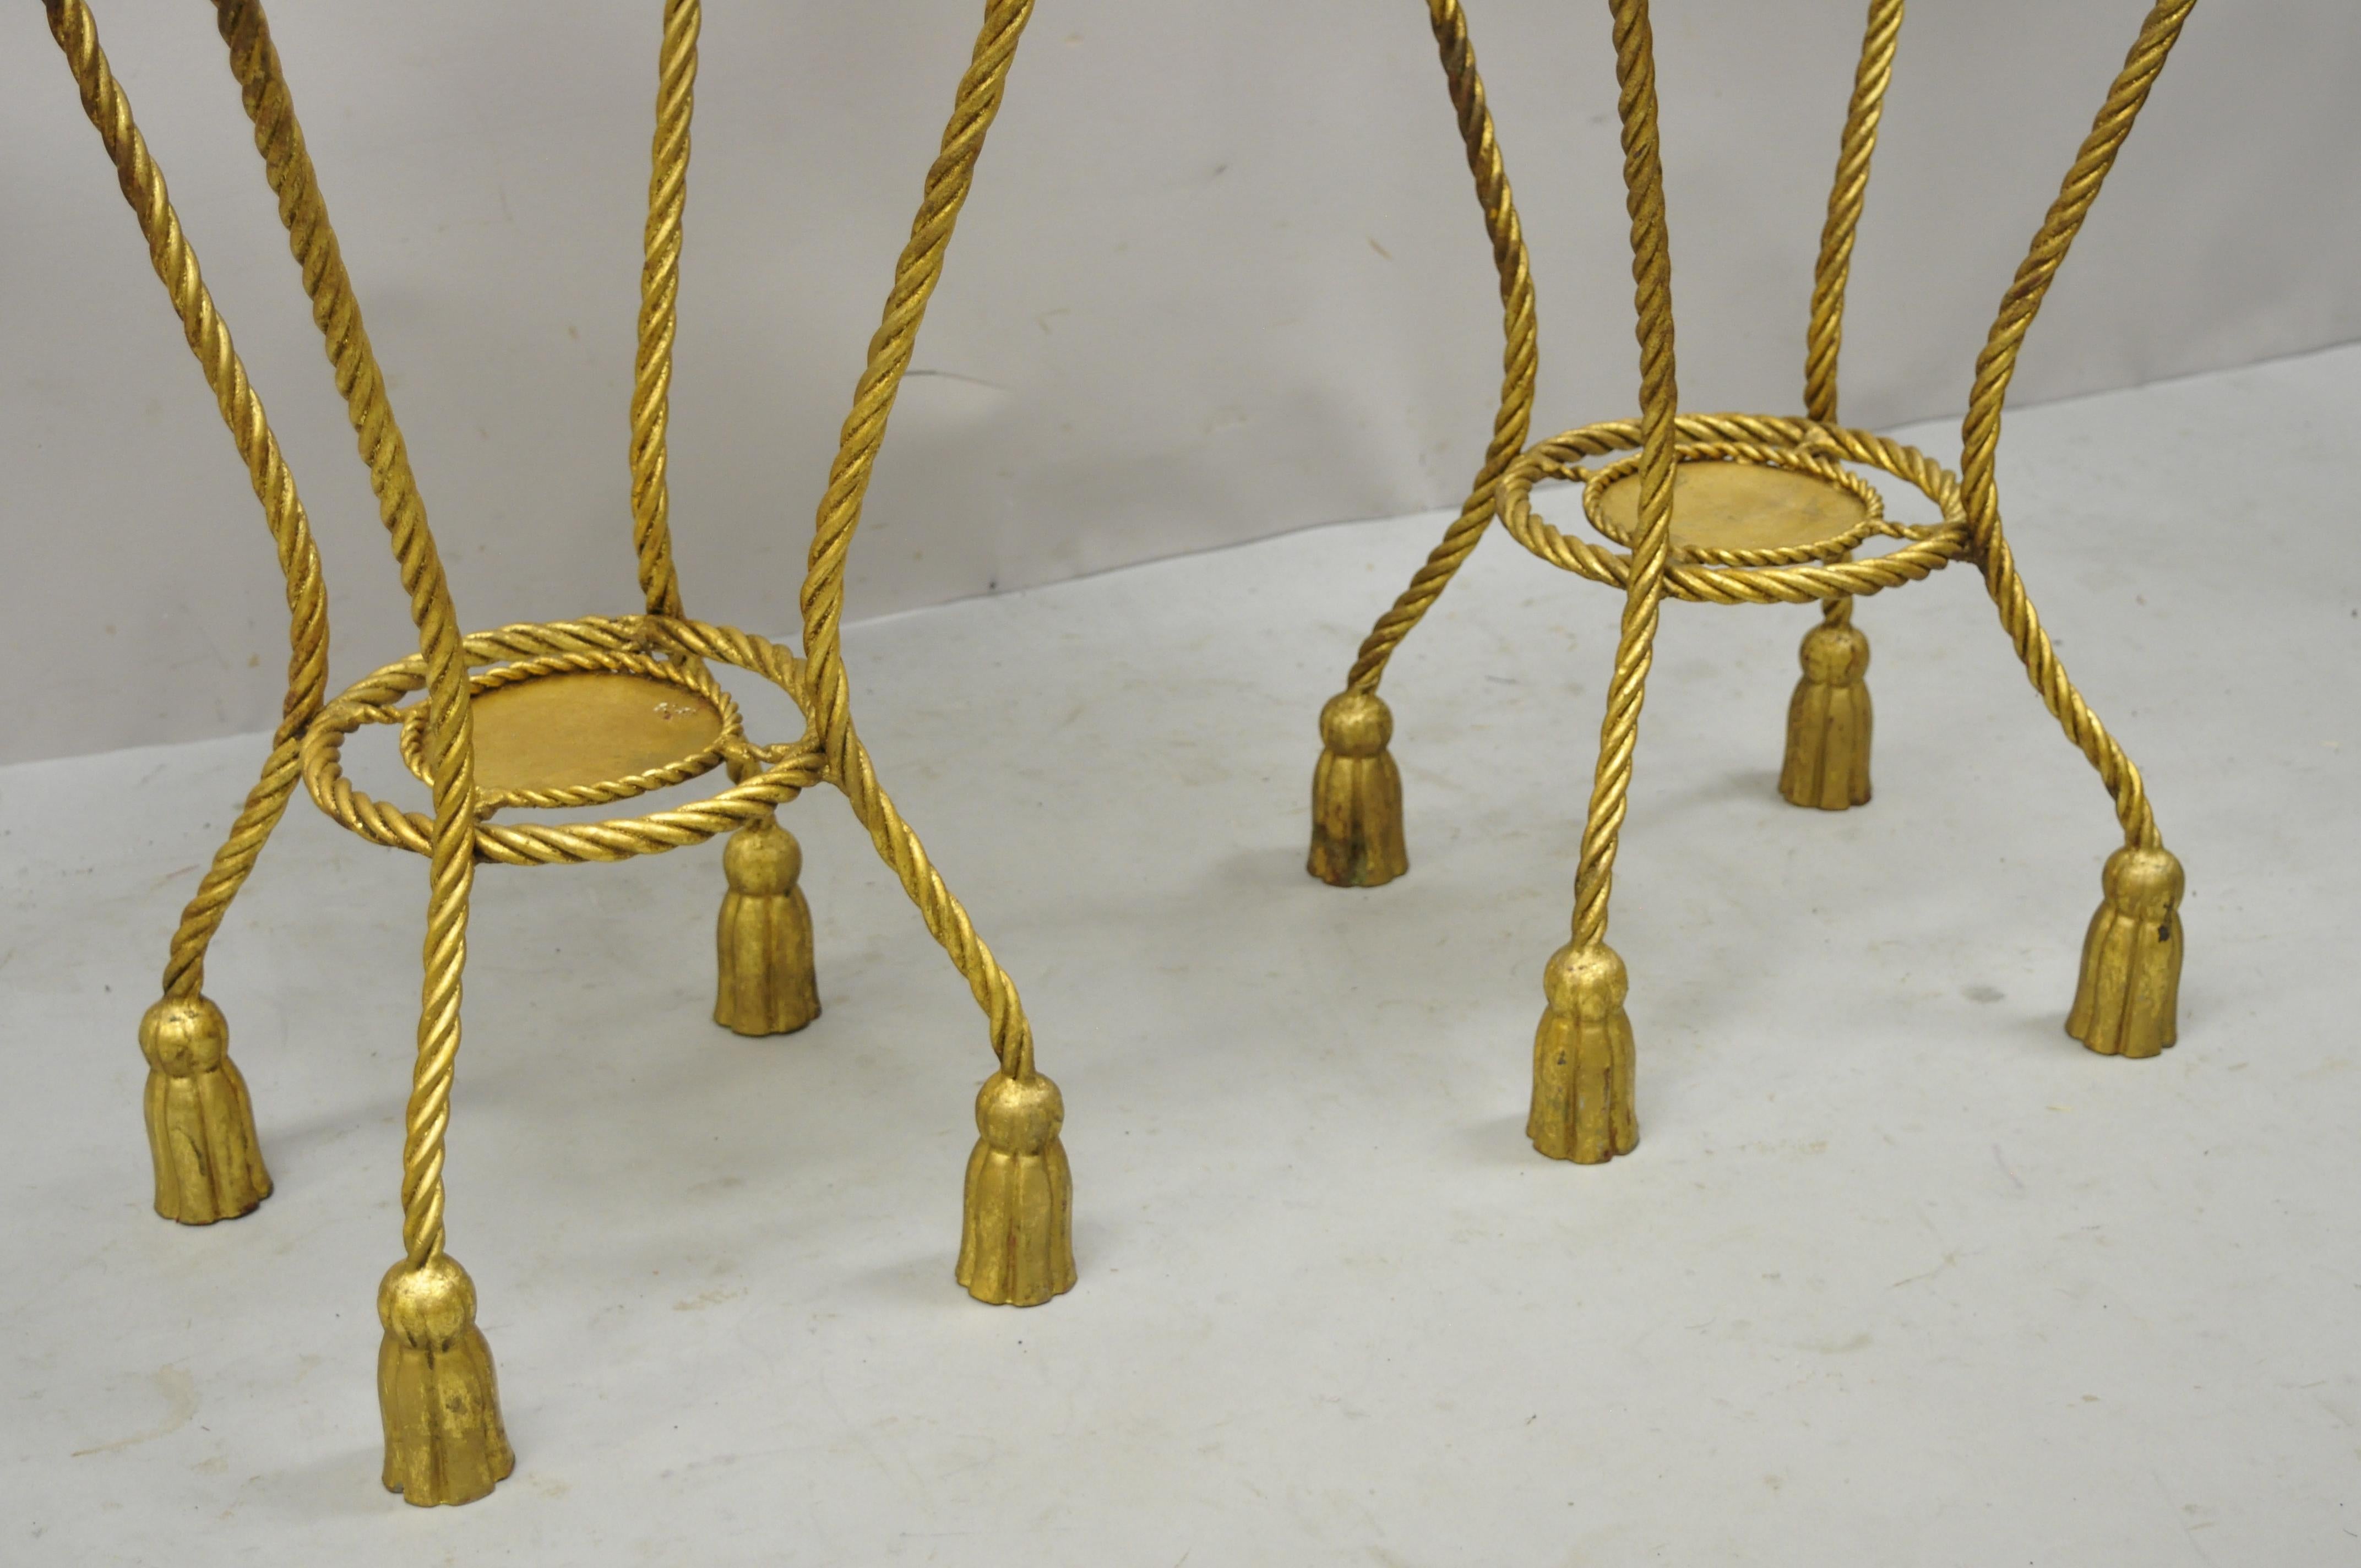 gold pedestal stand